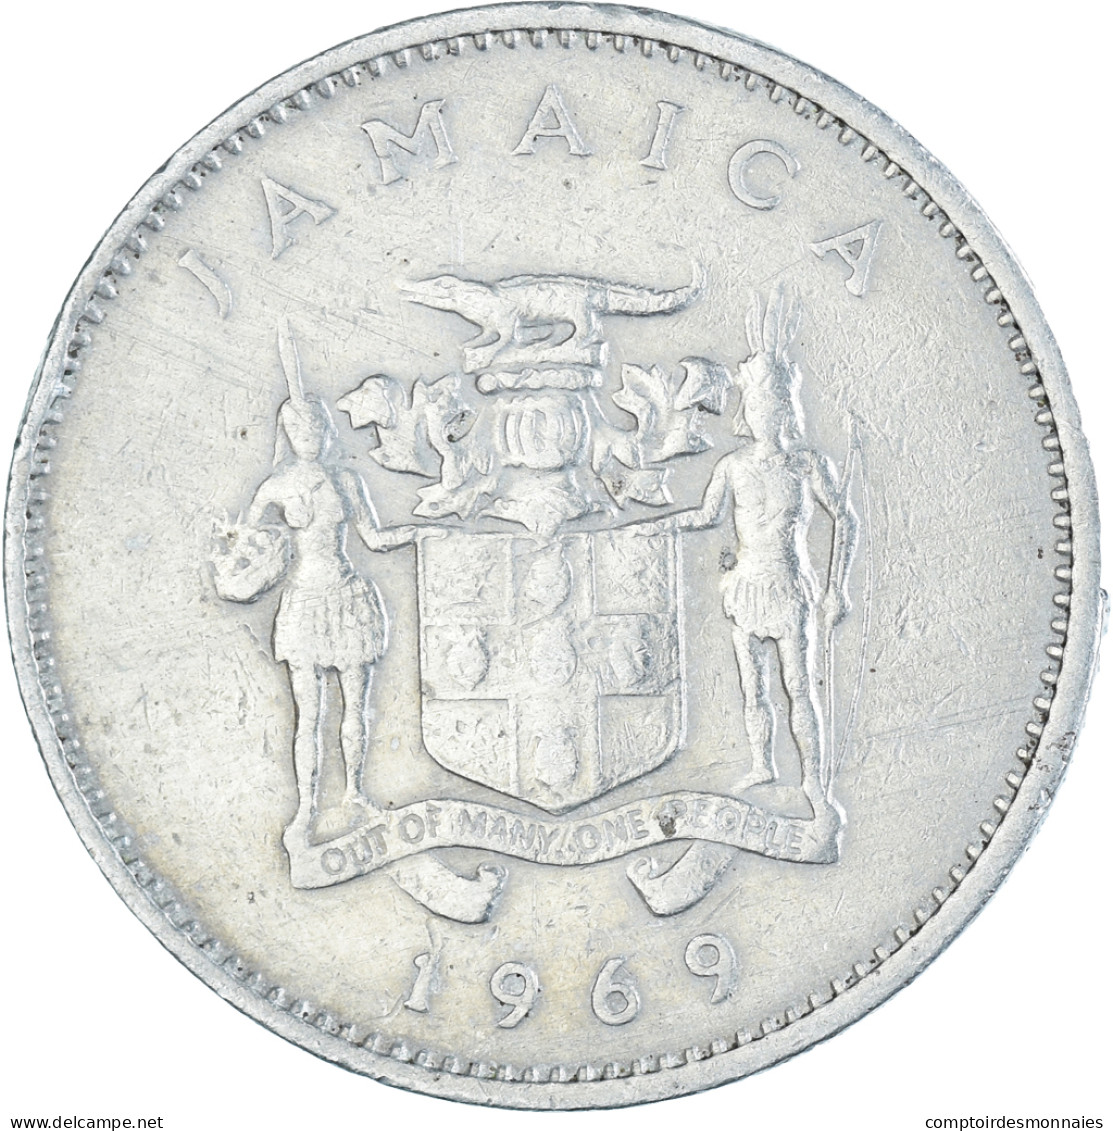 Monnaie, Jamaïque, 10 Cents, 1969 - Jamaique